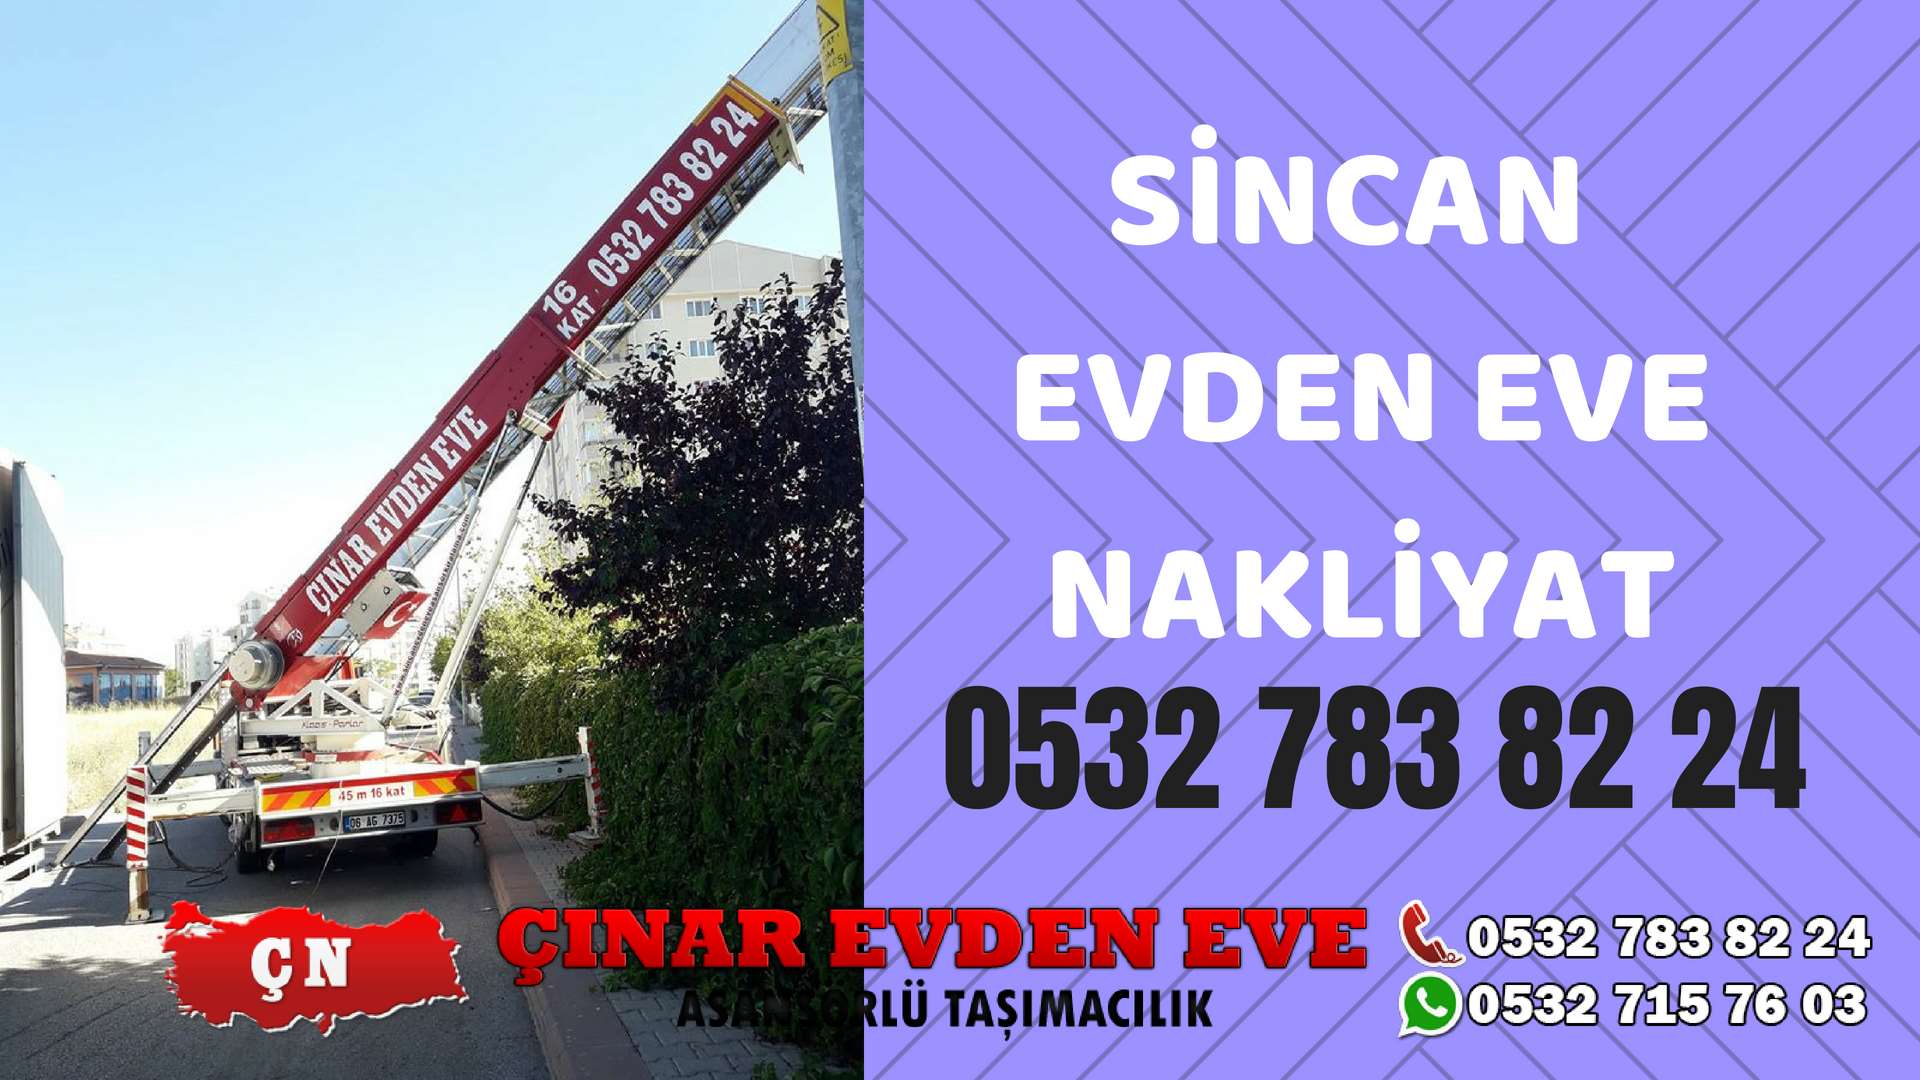 Ankara Yenikent Sincan Evden Eve Nakliyat, Asansörlü Taşıma Çınar Nakliyat Sincan 0532 715 76 03